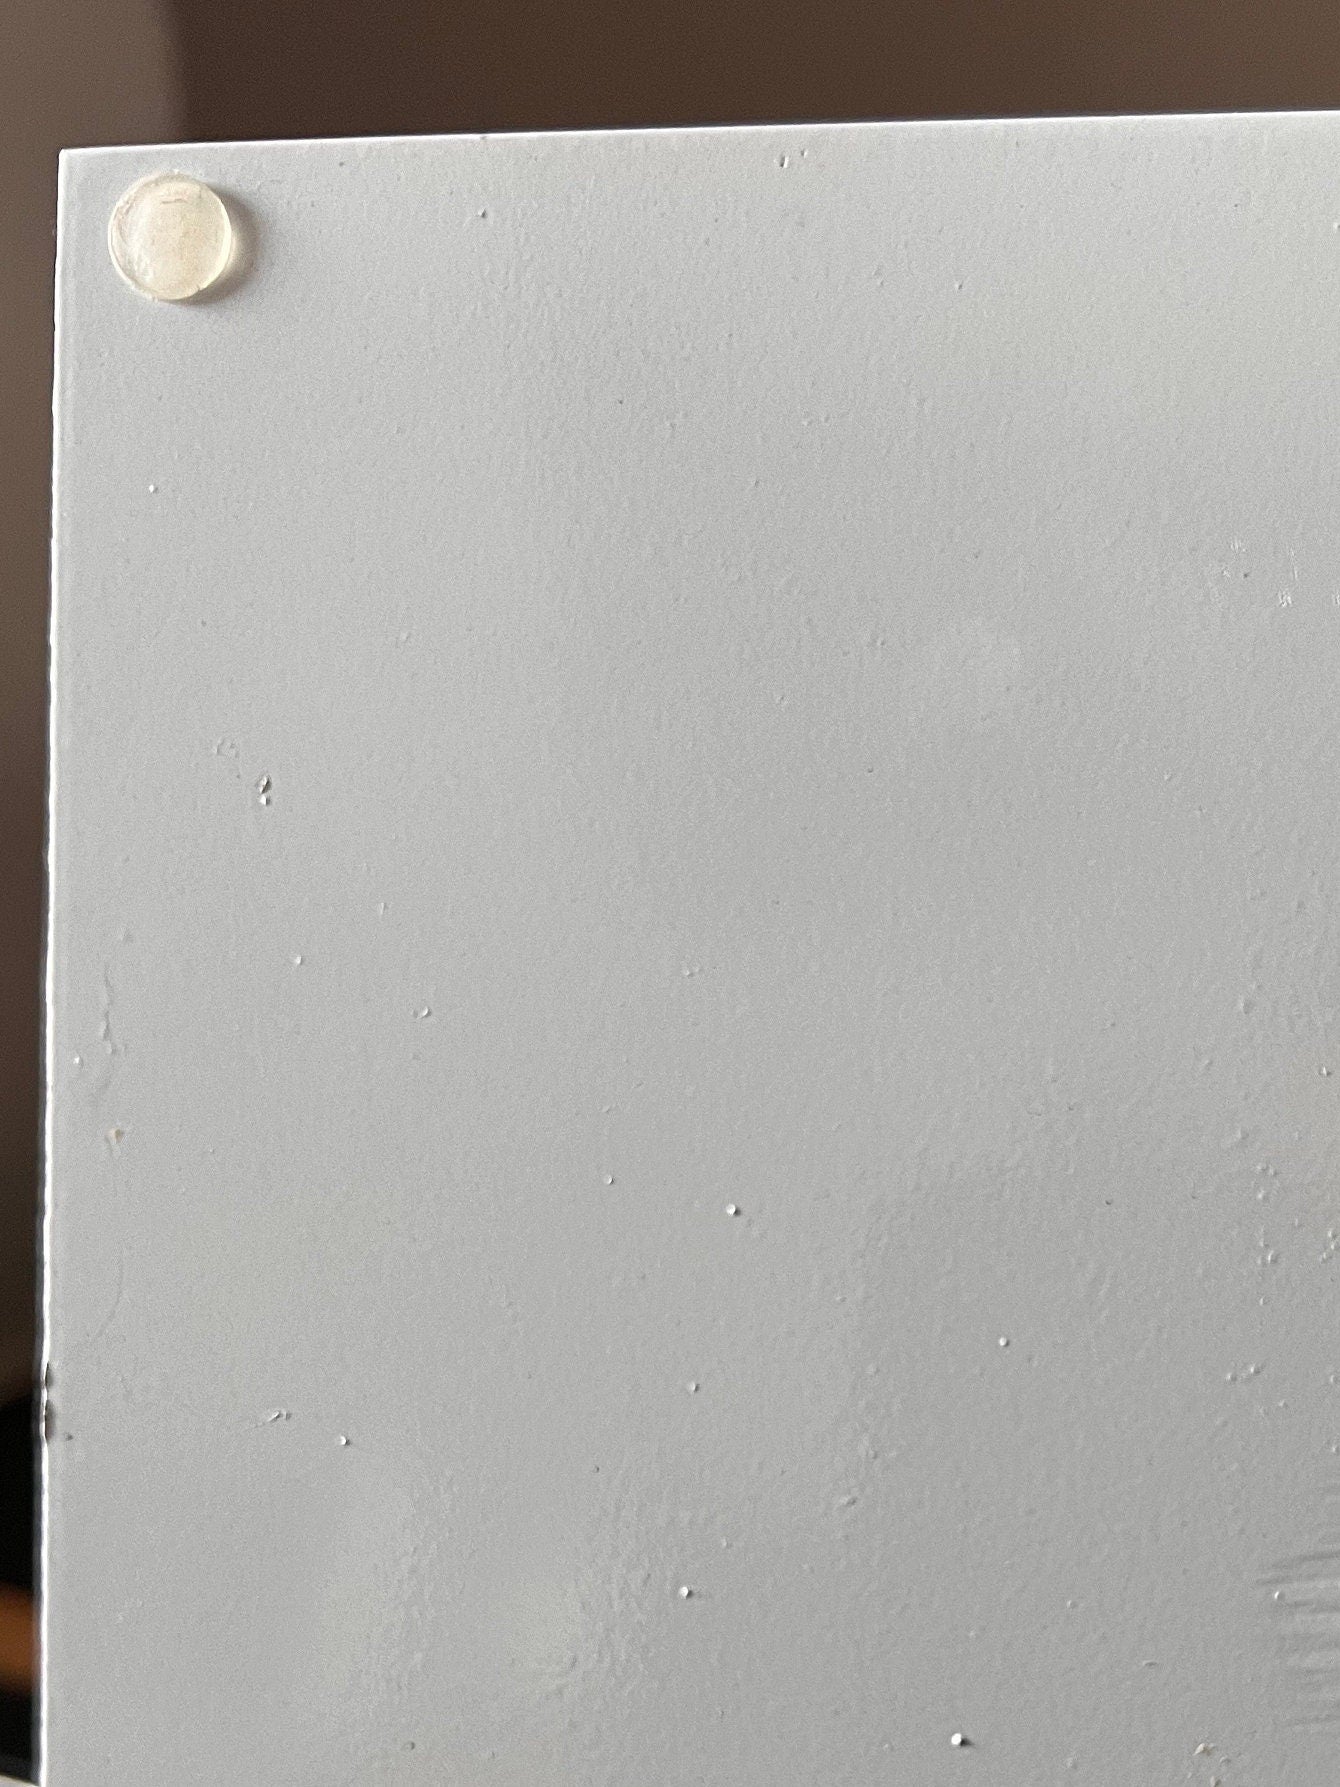 Eleganter Ständer für Wandkranz/ Wandkränze in weiß und schwarz lackiert, mit Gummifüssen, sehr standsicher. Geeignet für Kränze bis 60 cm.